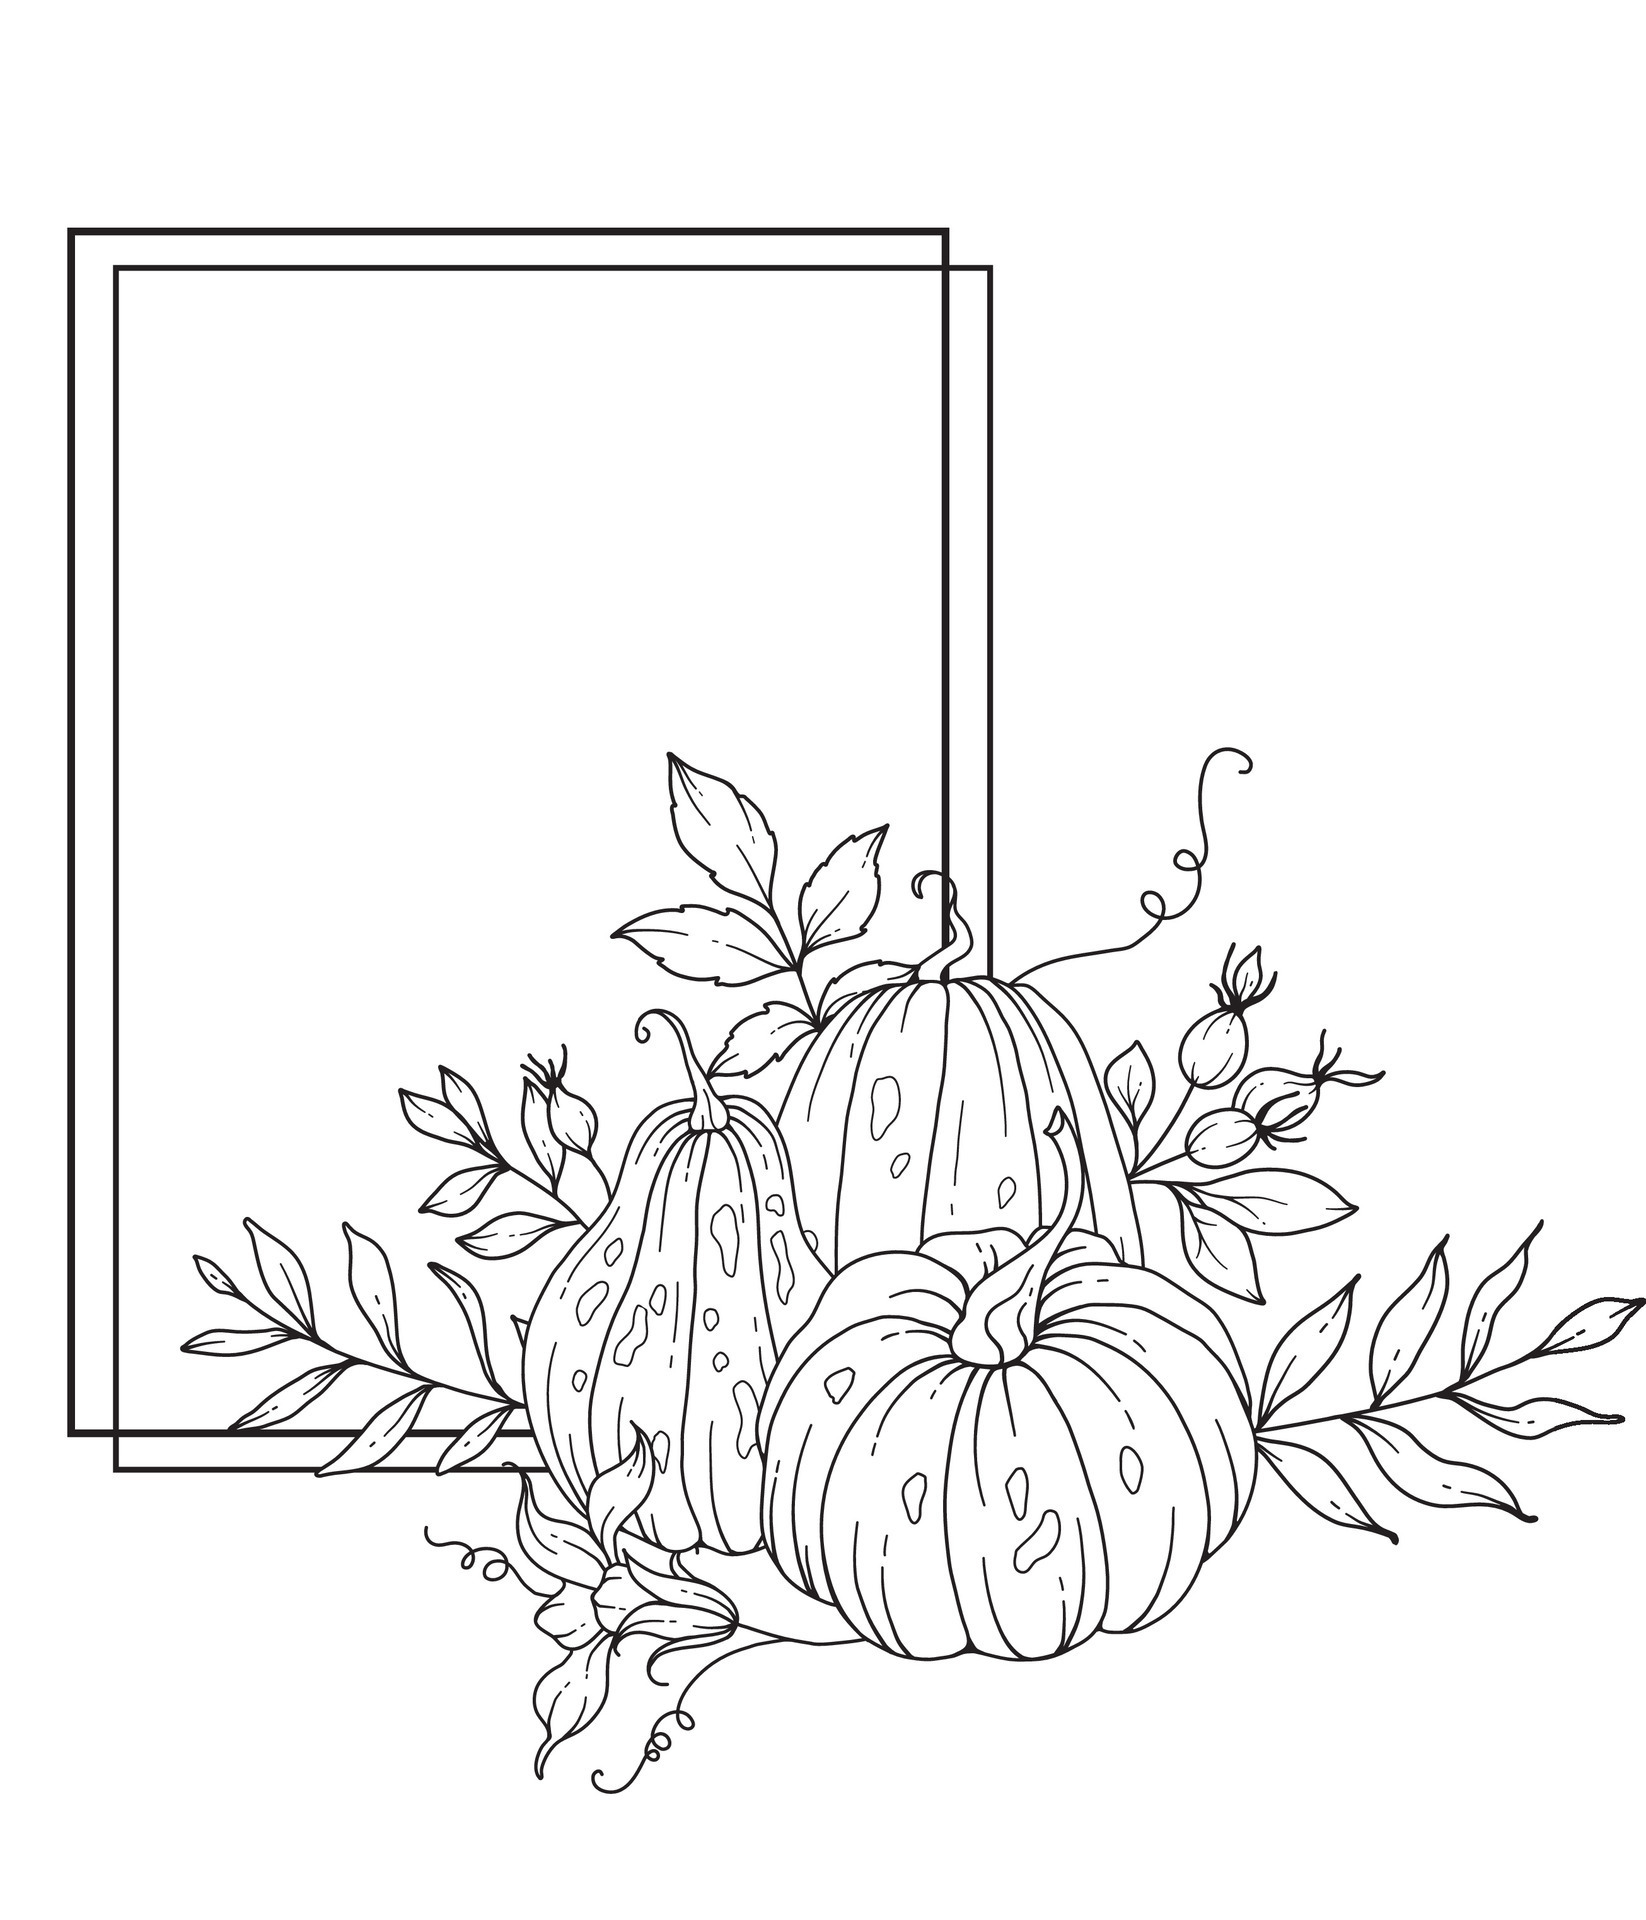 Thanksgiving Frame Outline. Pumpkins Line Art Illustration, Outline ...